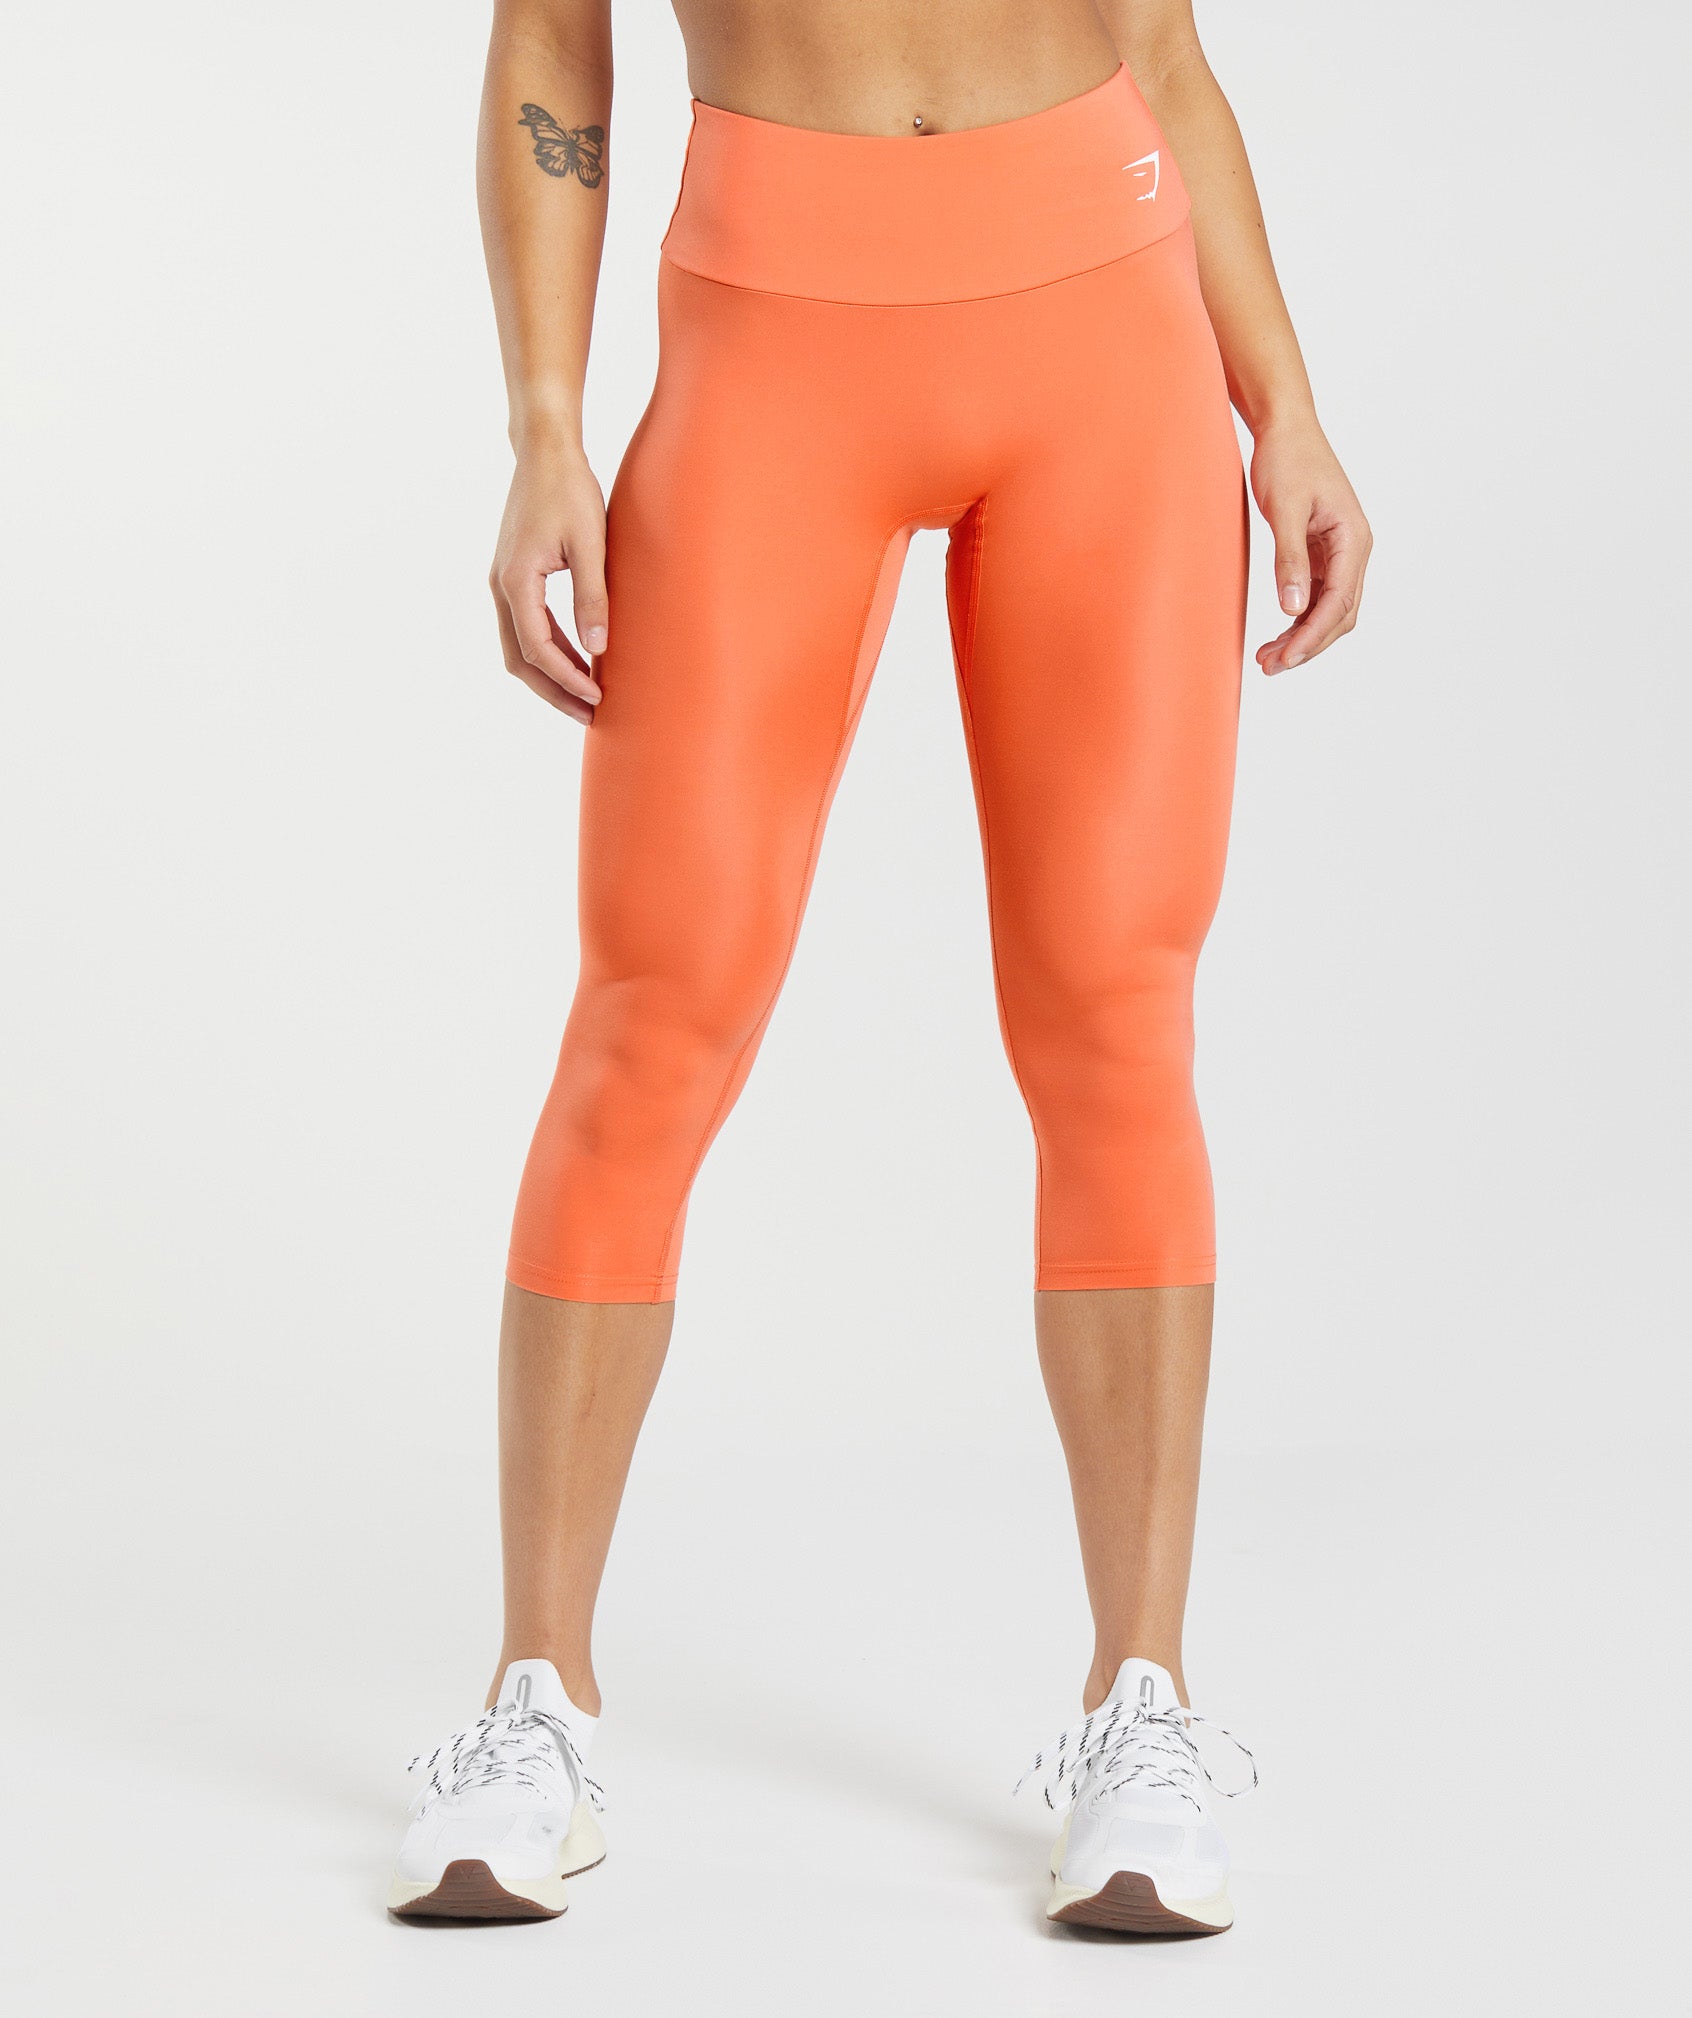 Women's training leggings Gymshark KK Twins earth orange